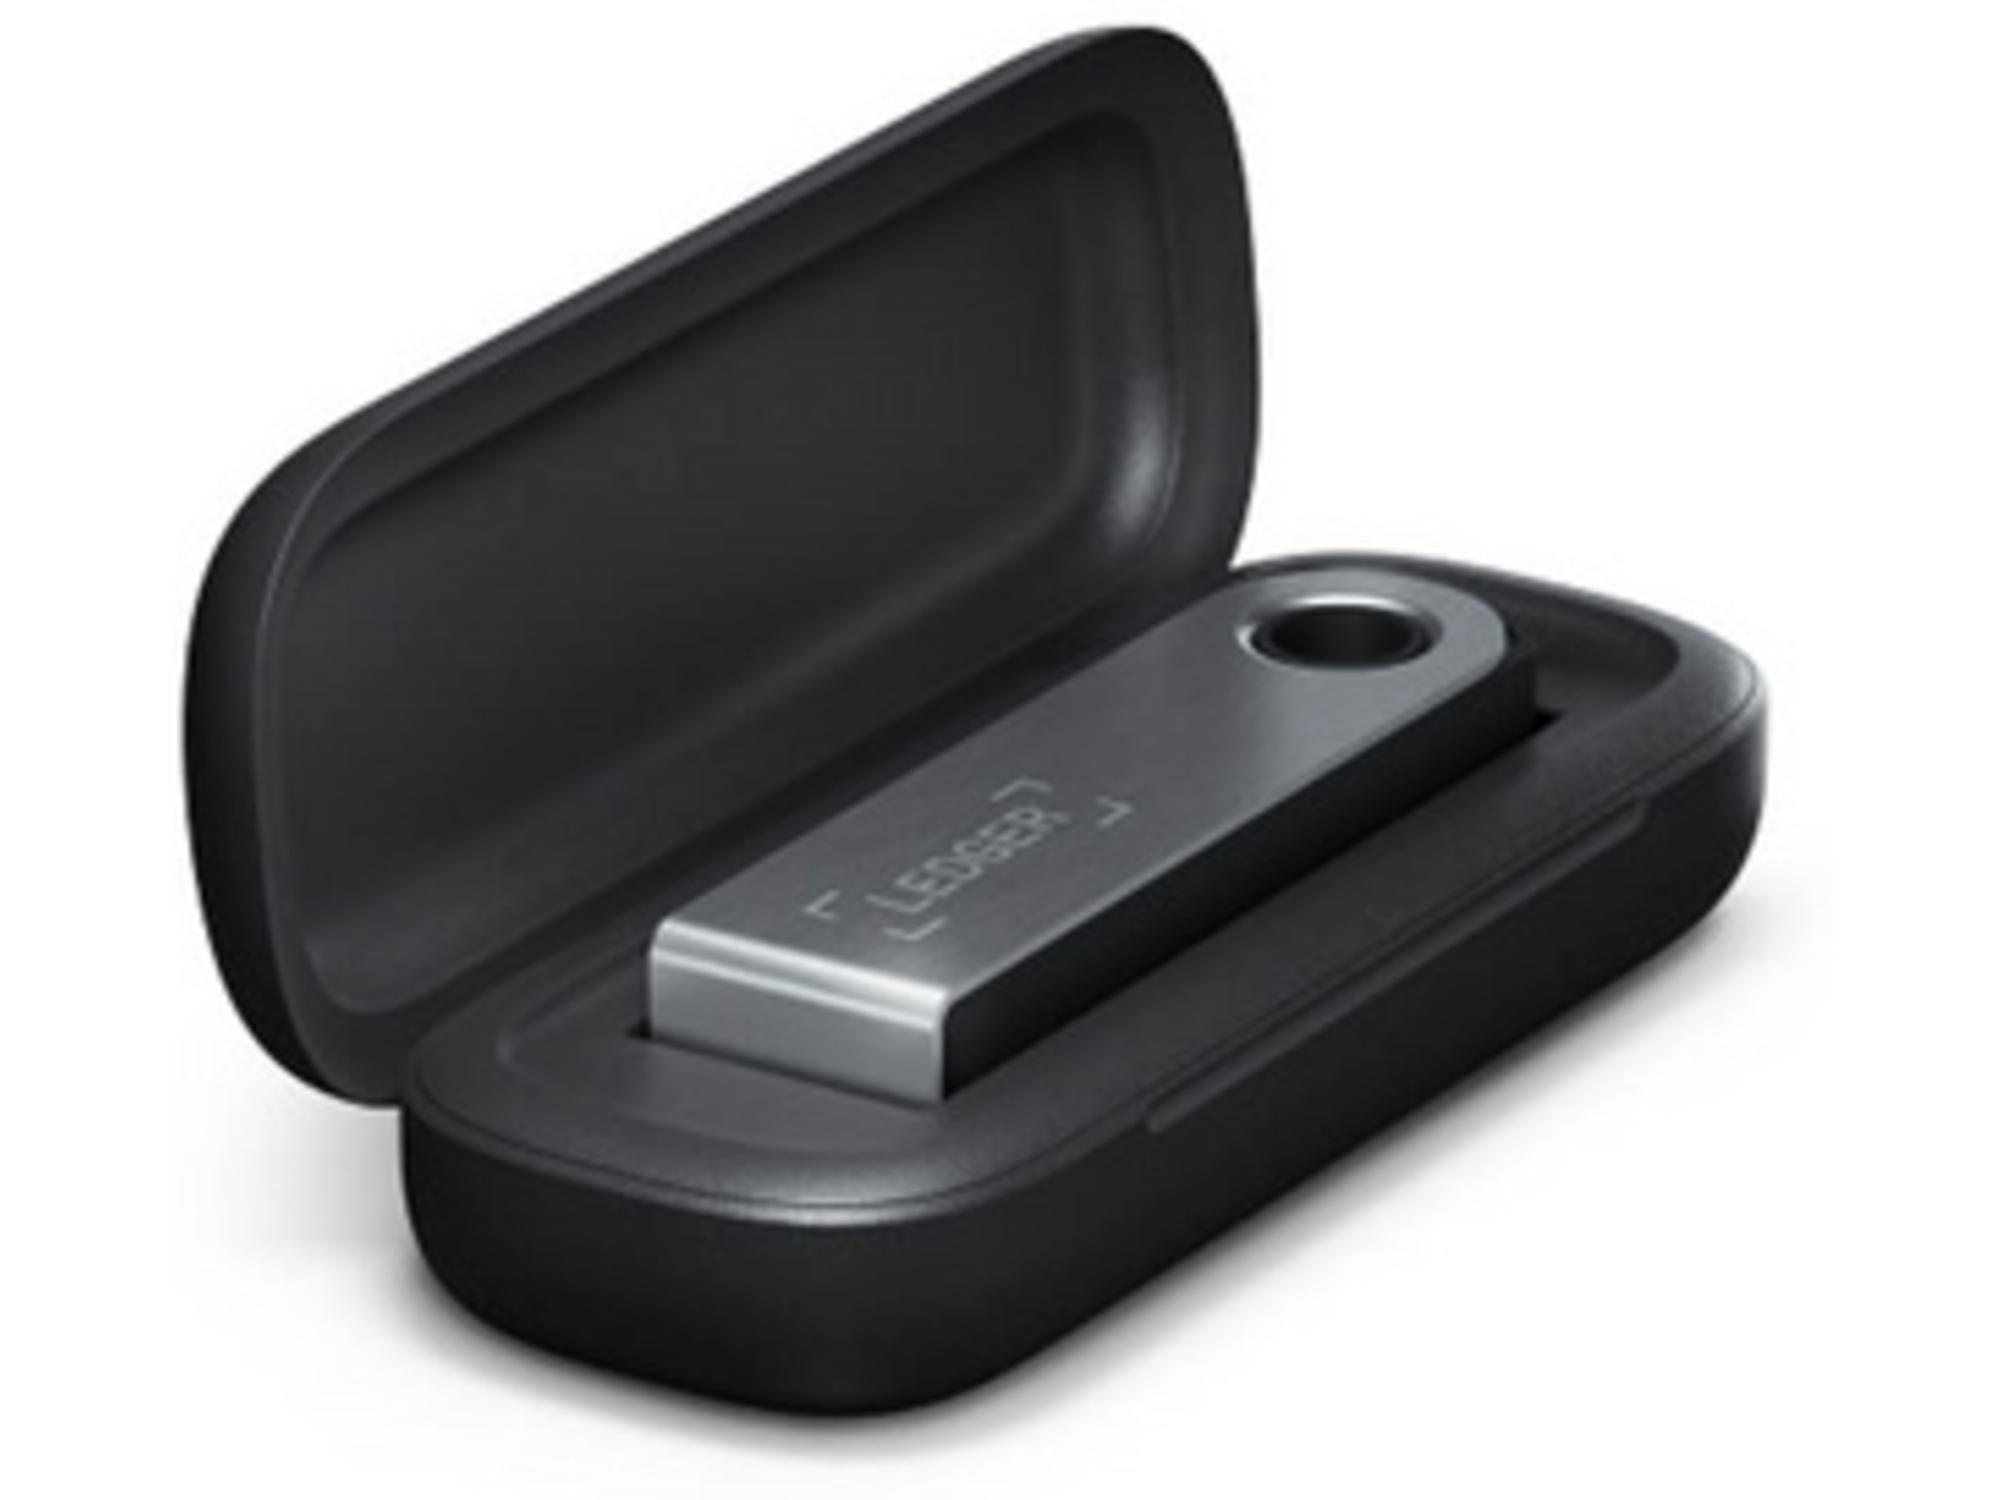 LEDGER zaščitni ovitek za strojno denarnico Nano S Plus Case, črn